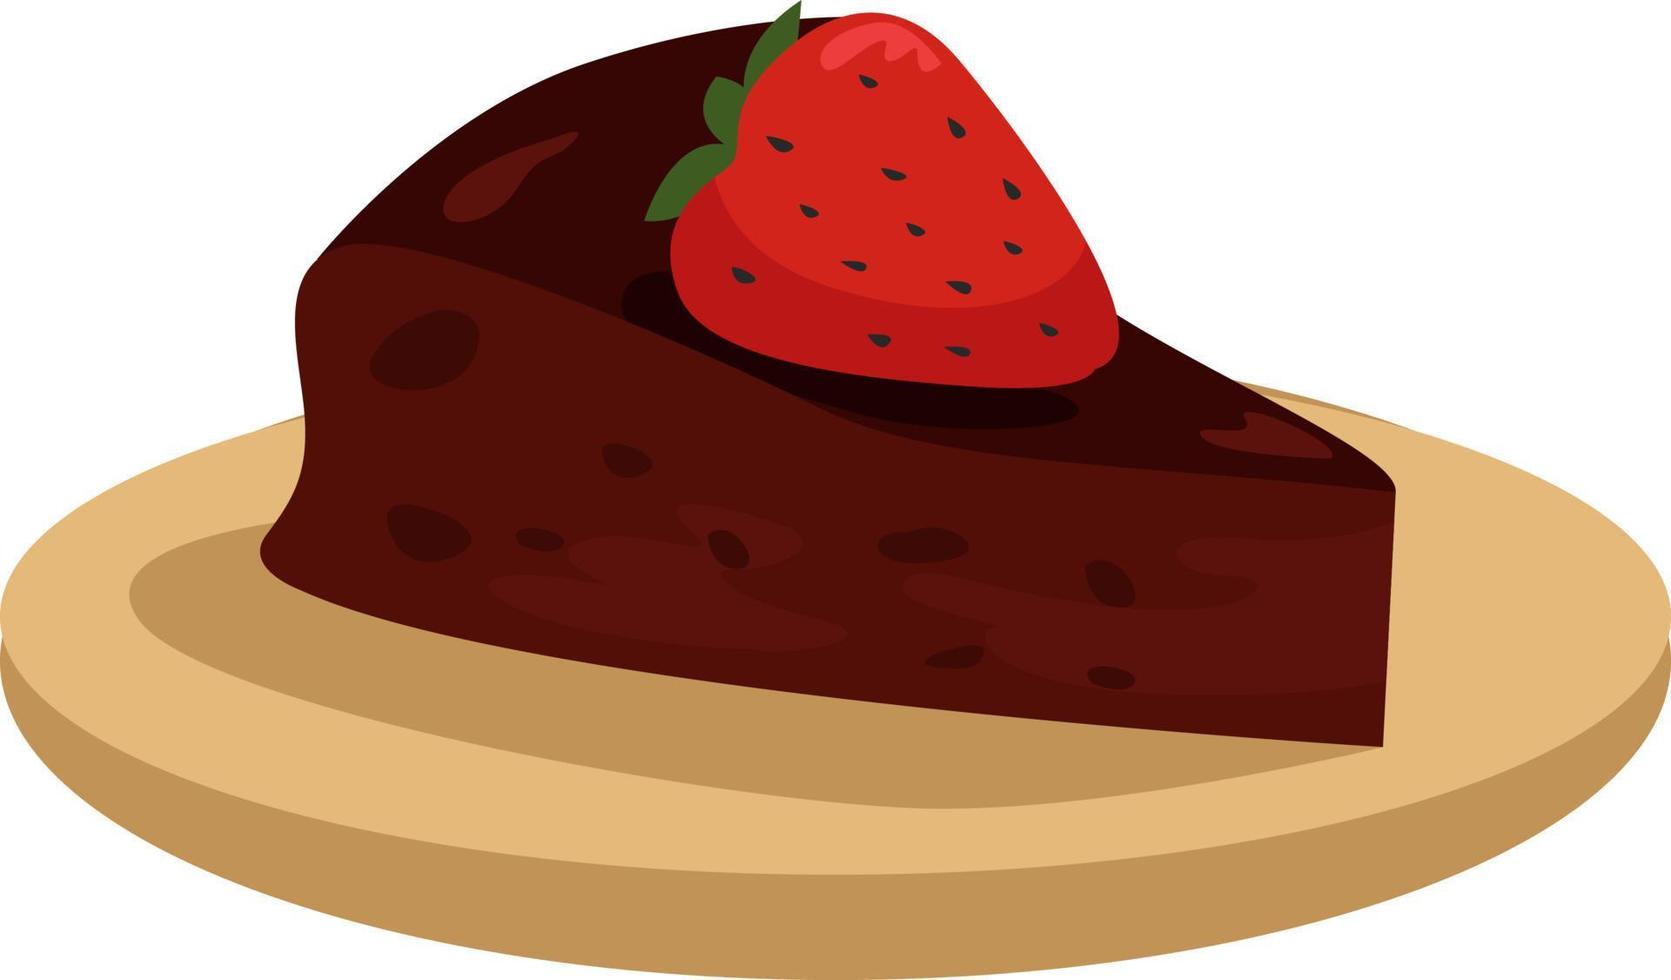 tranche de gâteau au chocolat avec fraise, illustration, vecteur sur fond blanc.